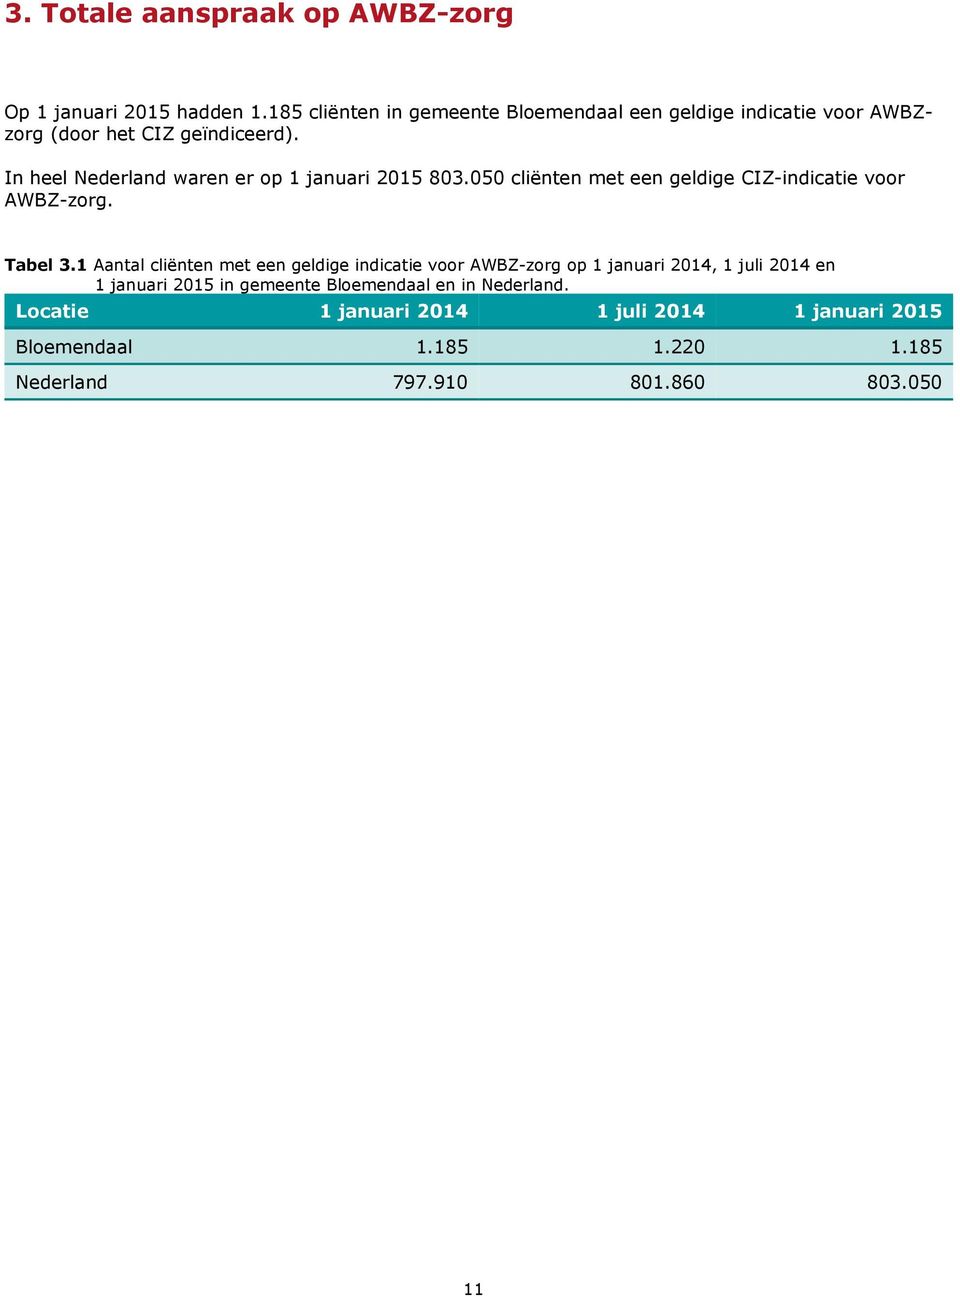 In heel Nederland waren er op 1 januari 2015 803.050 met een geldige CIZ-indicatie voor AWBZ-zorg. Tabel 3.